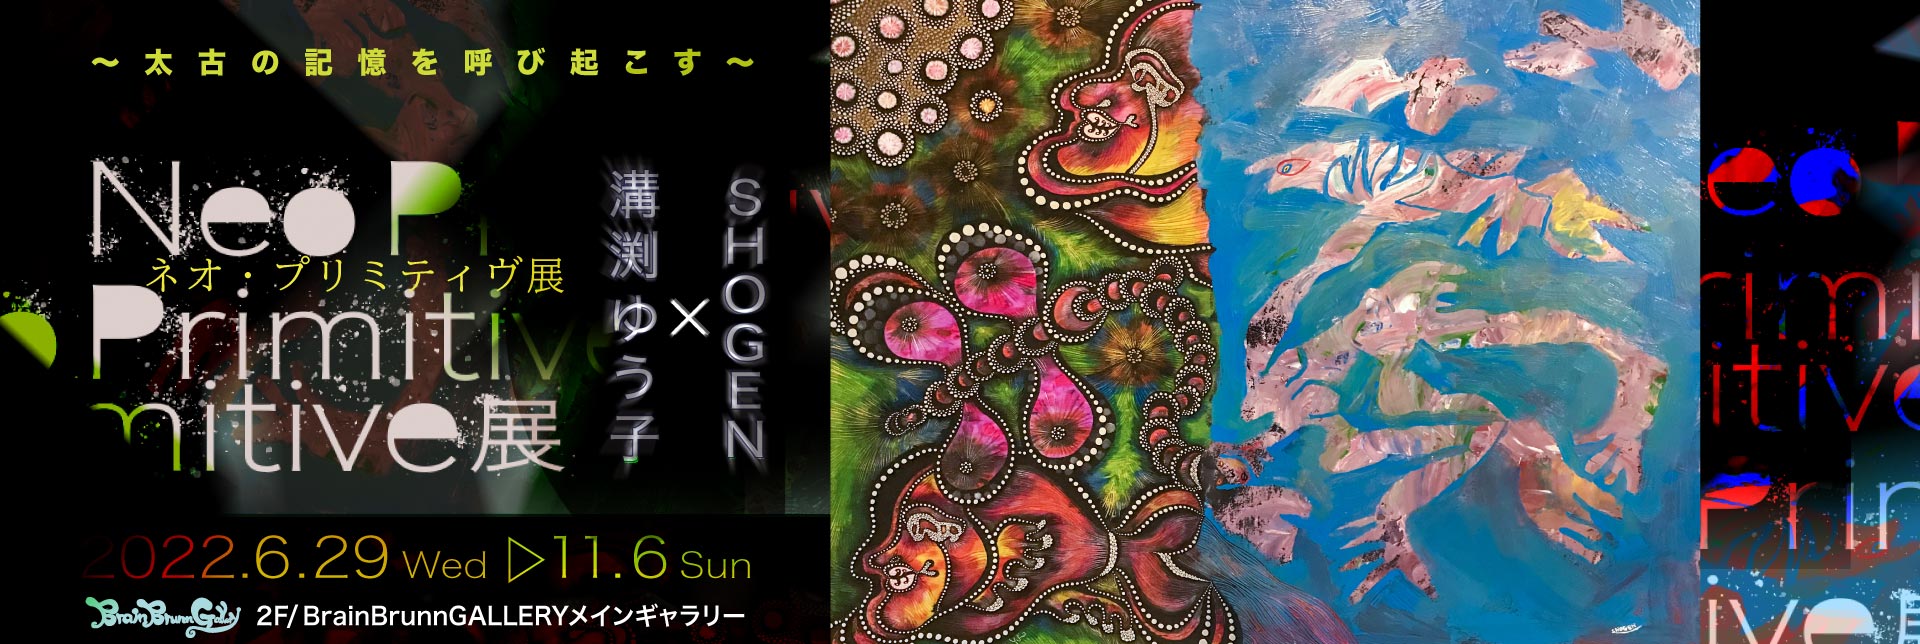 溝渕ゆう子XSHOGE2人展【Neo-Primitive】2022年06月29日開始